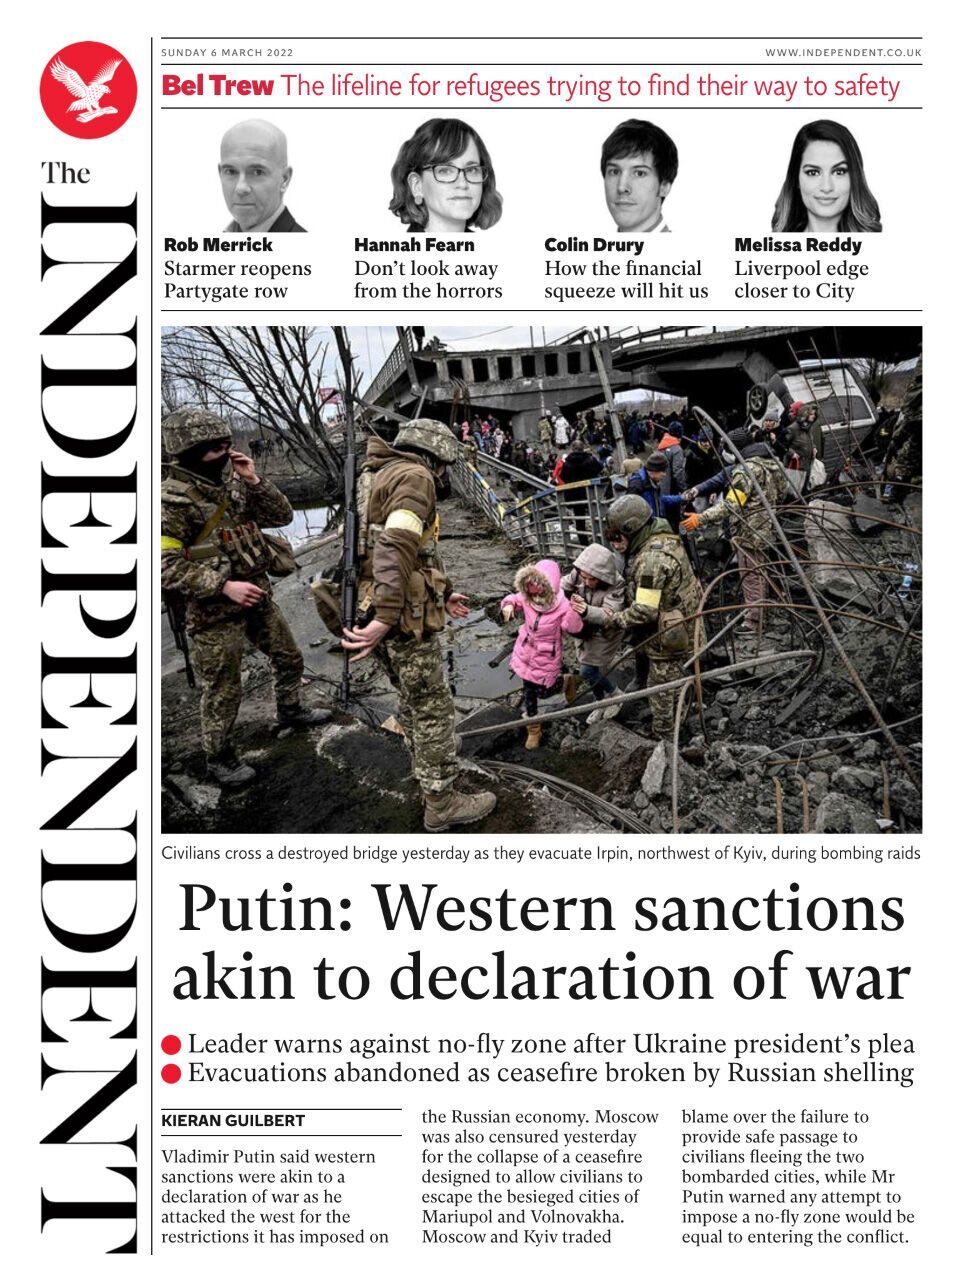 Западные санкции сродни объявлению войны